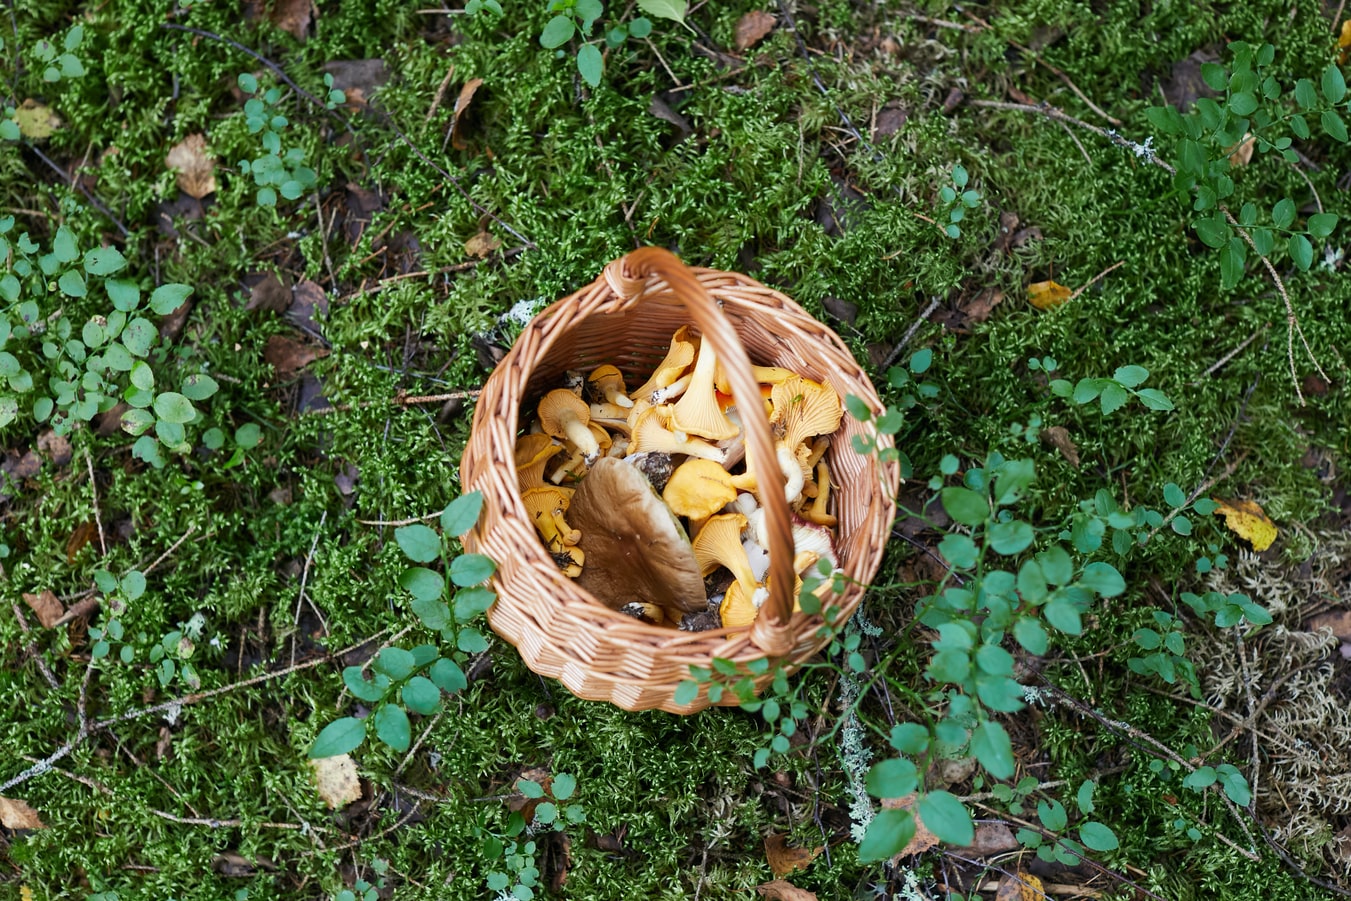 pick magic mushrooms